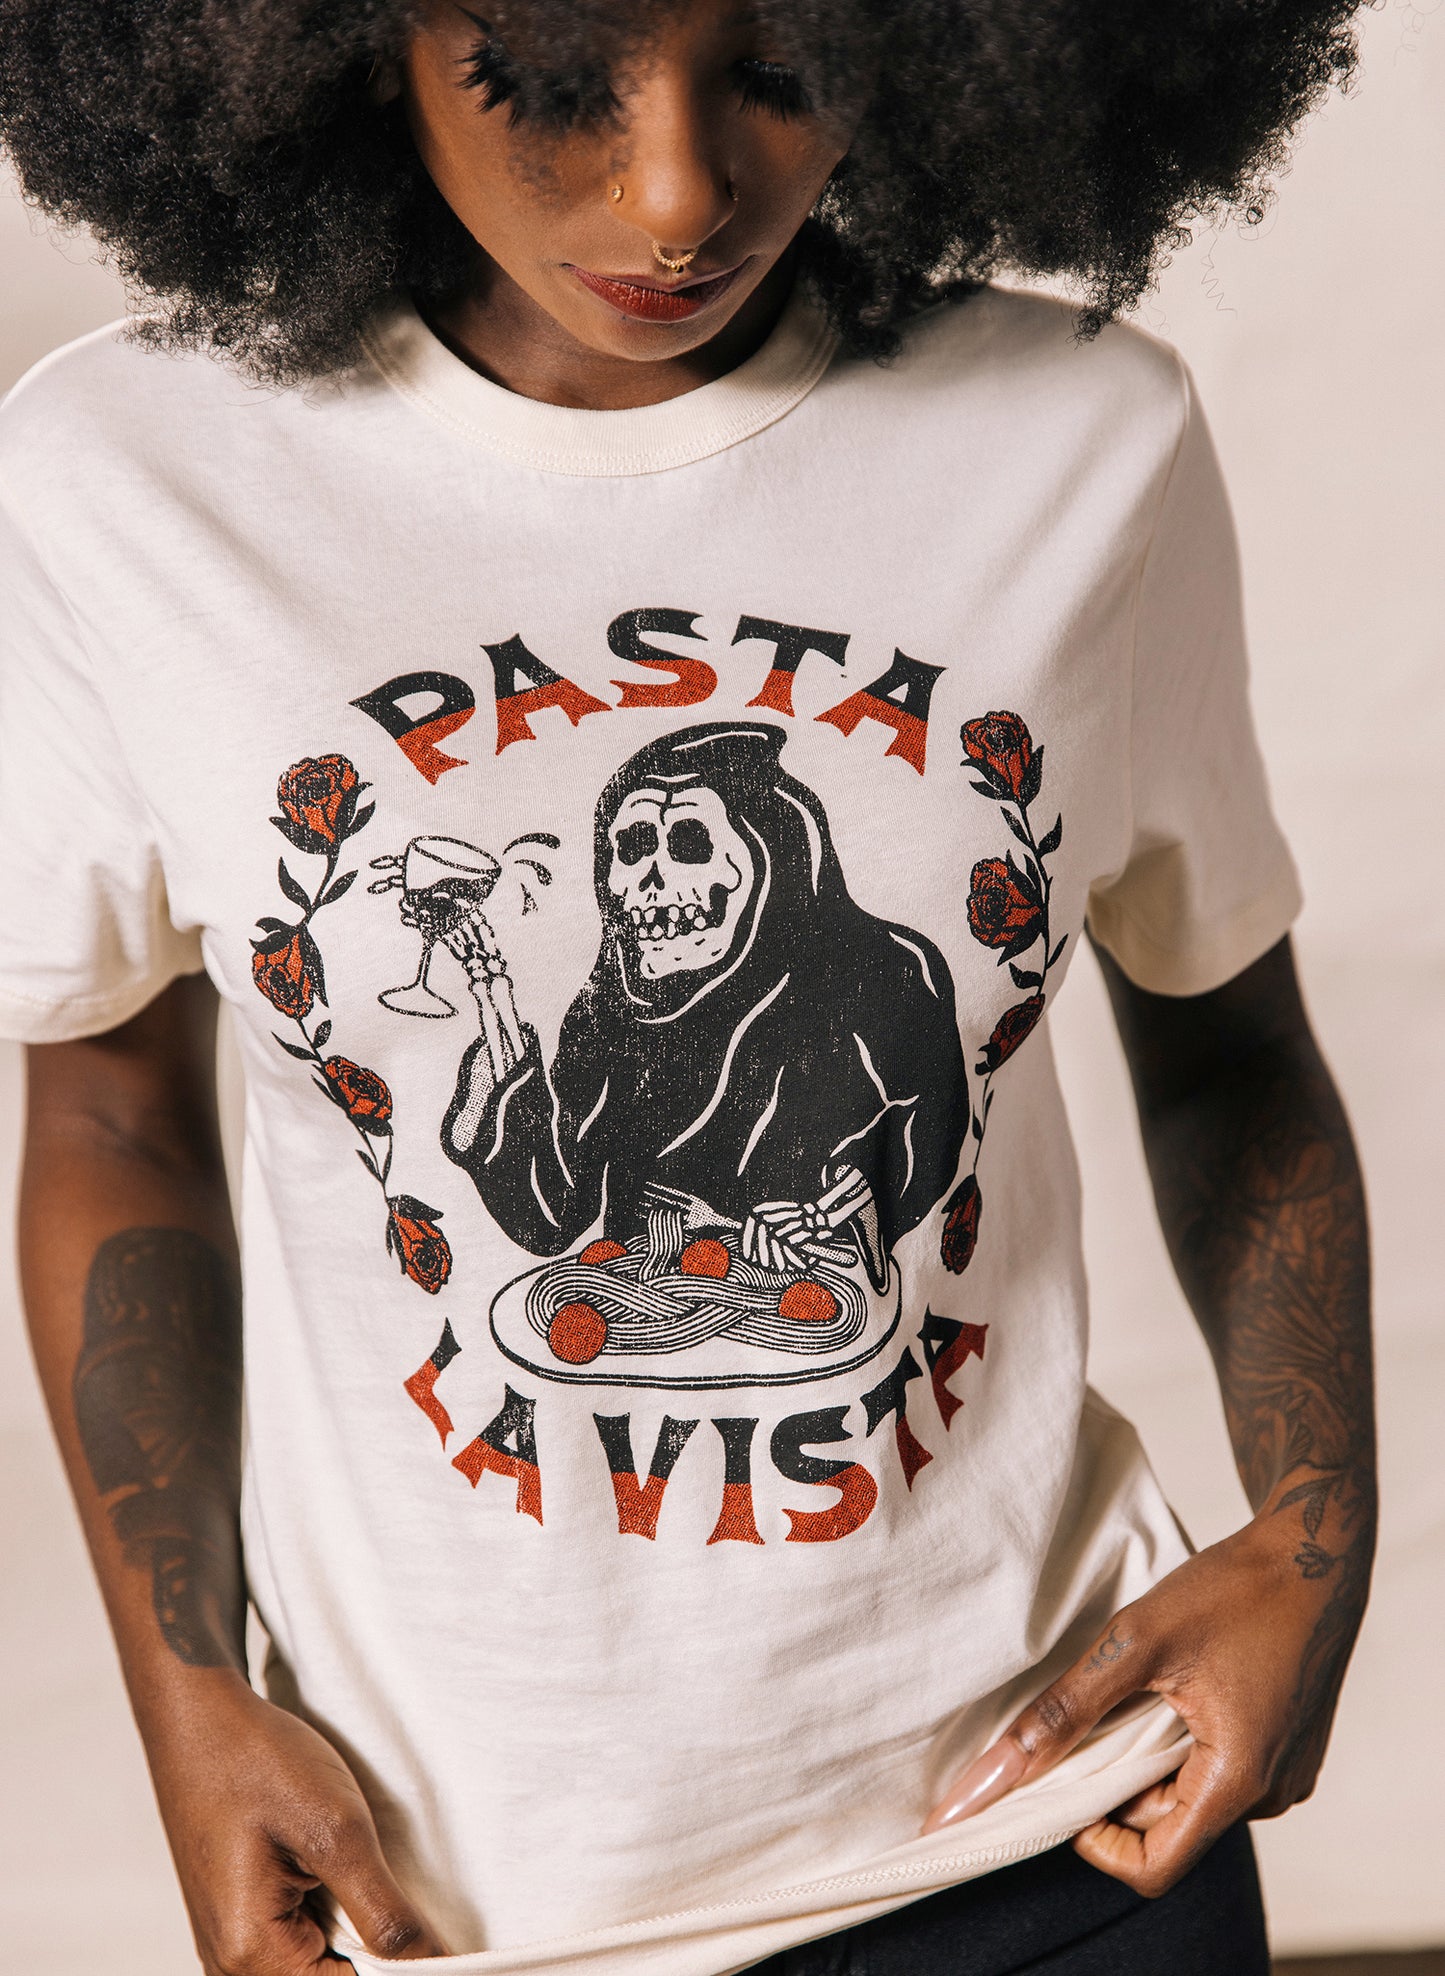 Pasta La Vista Grim Reaper Italian Restaurant Food Pun T-shirt Noodles Carbs